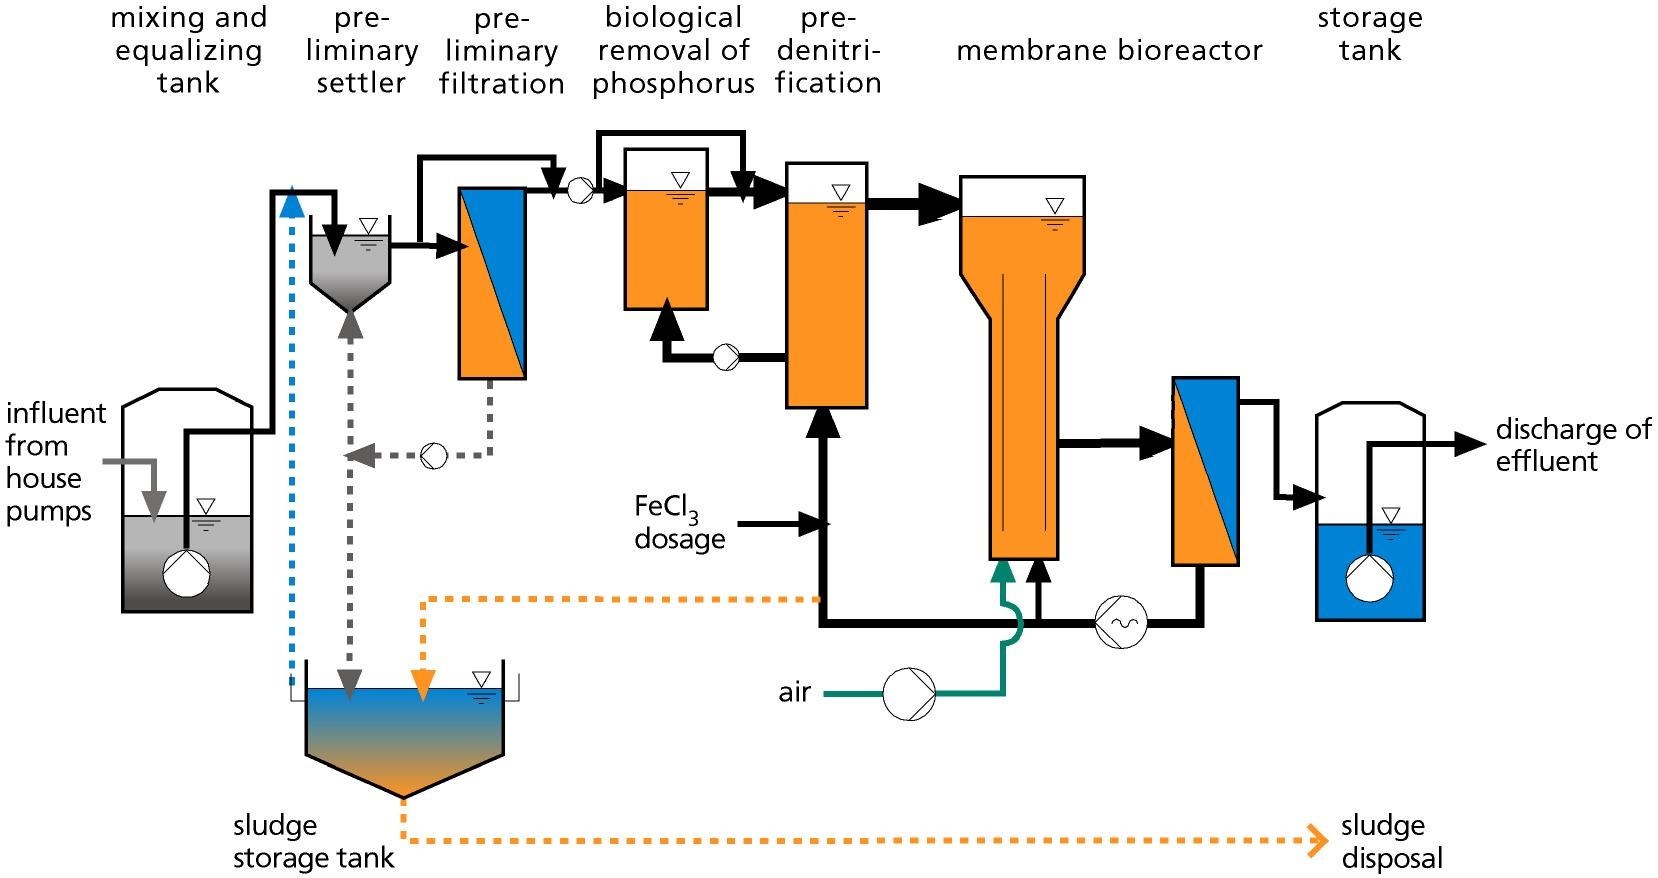 Quy trình xử lý nước thải cho một hệ thống thông thường